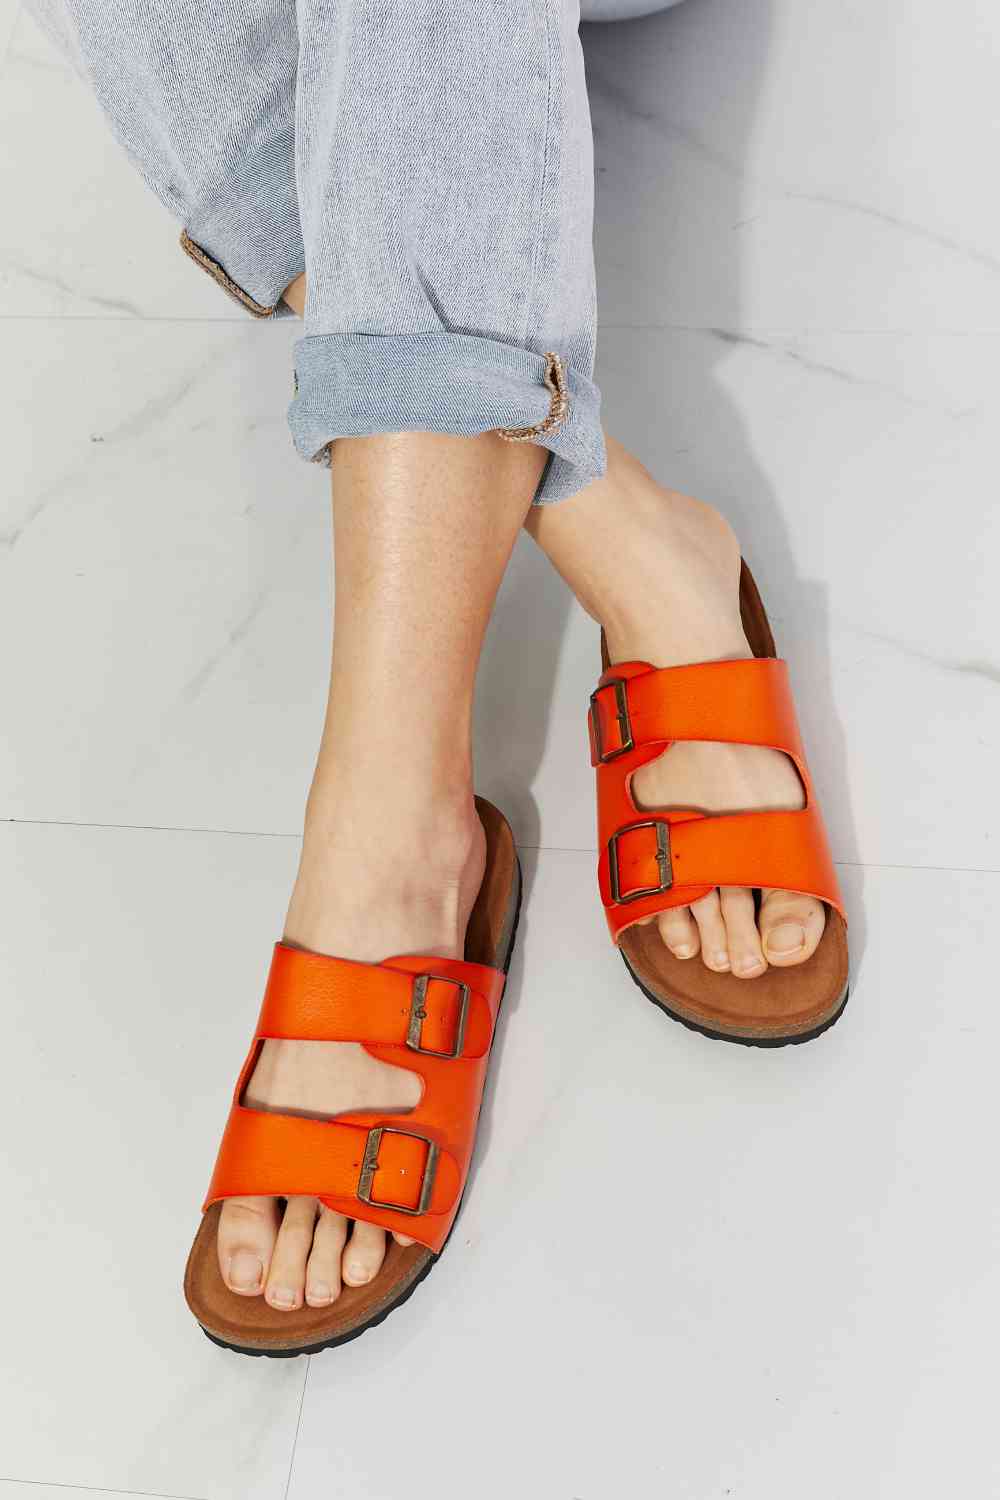 MMShoes Feeling Alive Double Banded Slide Sandals in Orange - Alonna's Legging Land